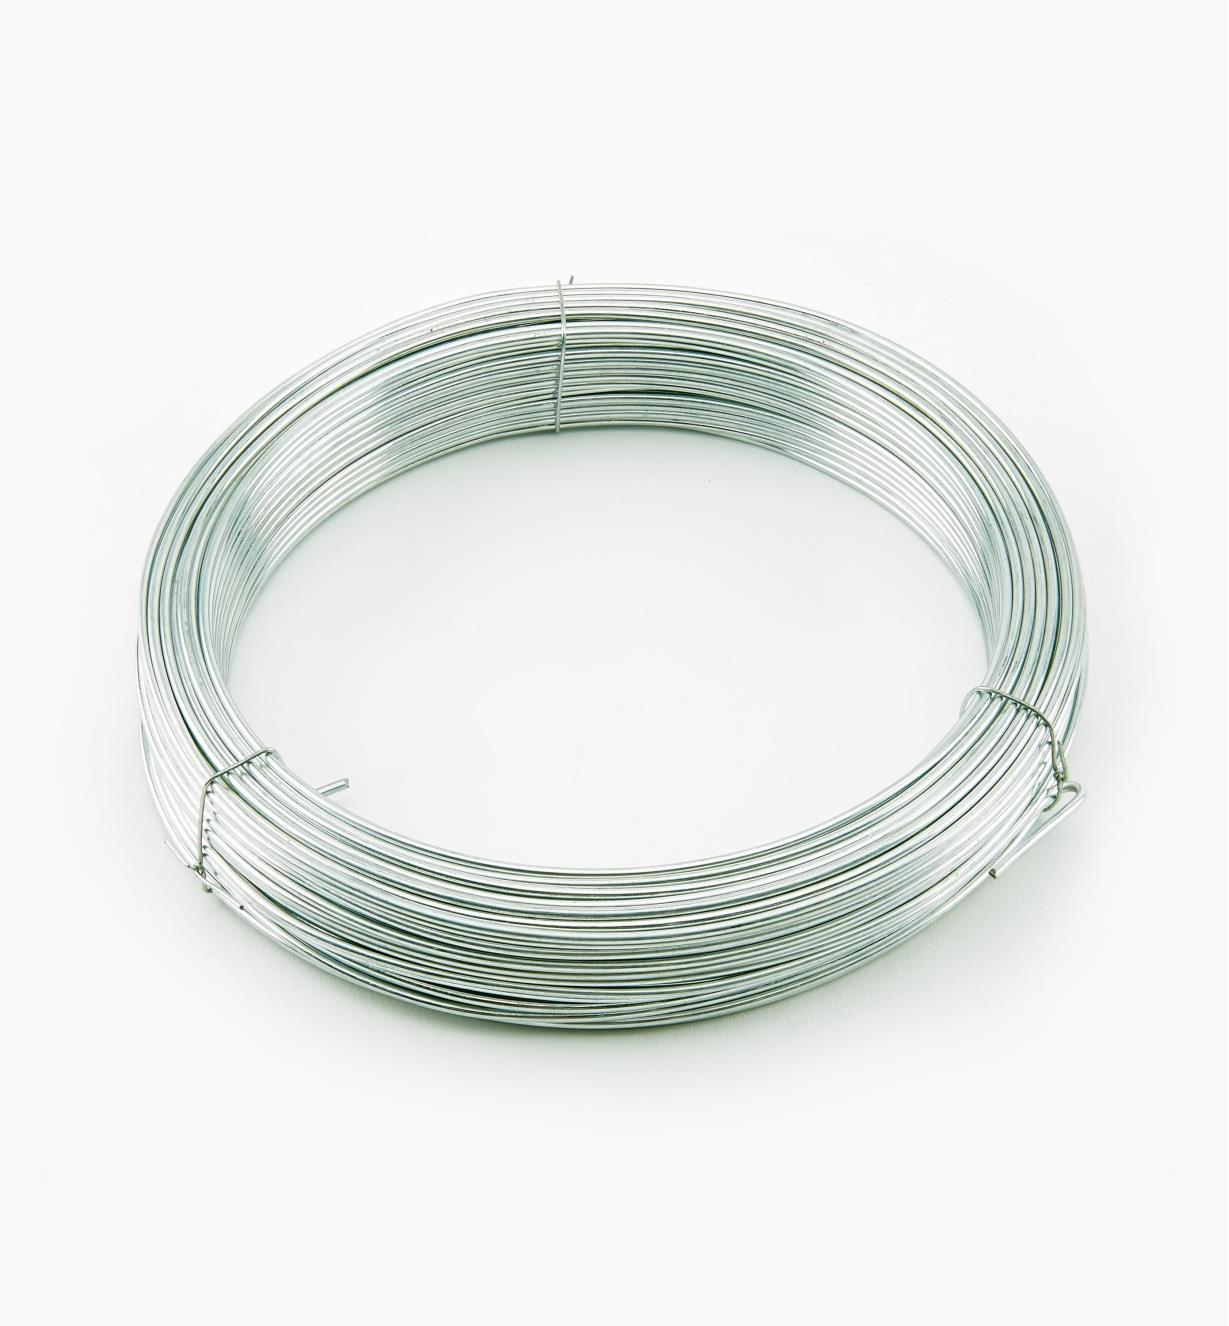 09A0804 - 150' HTS Wire, 14-gauge